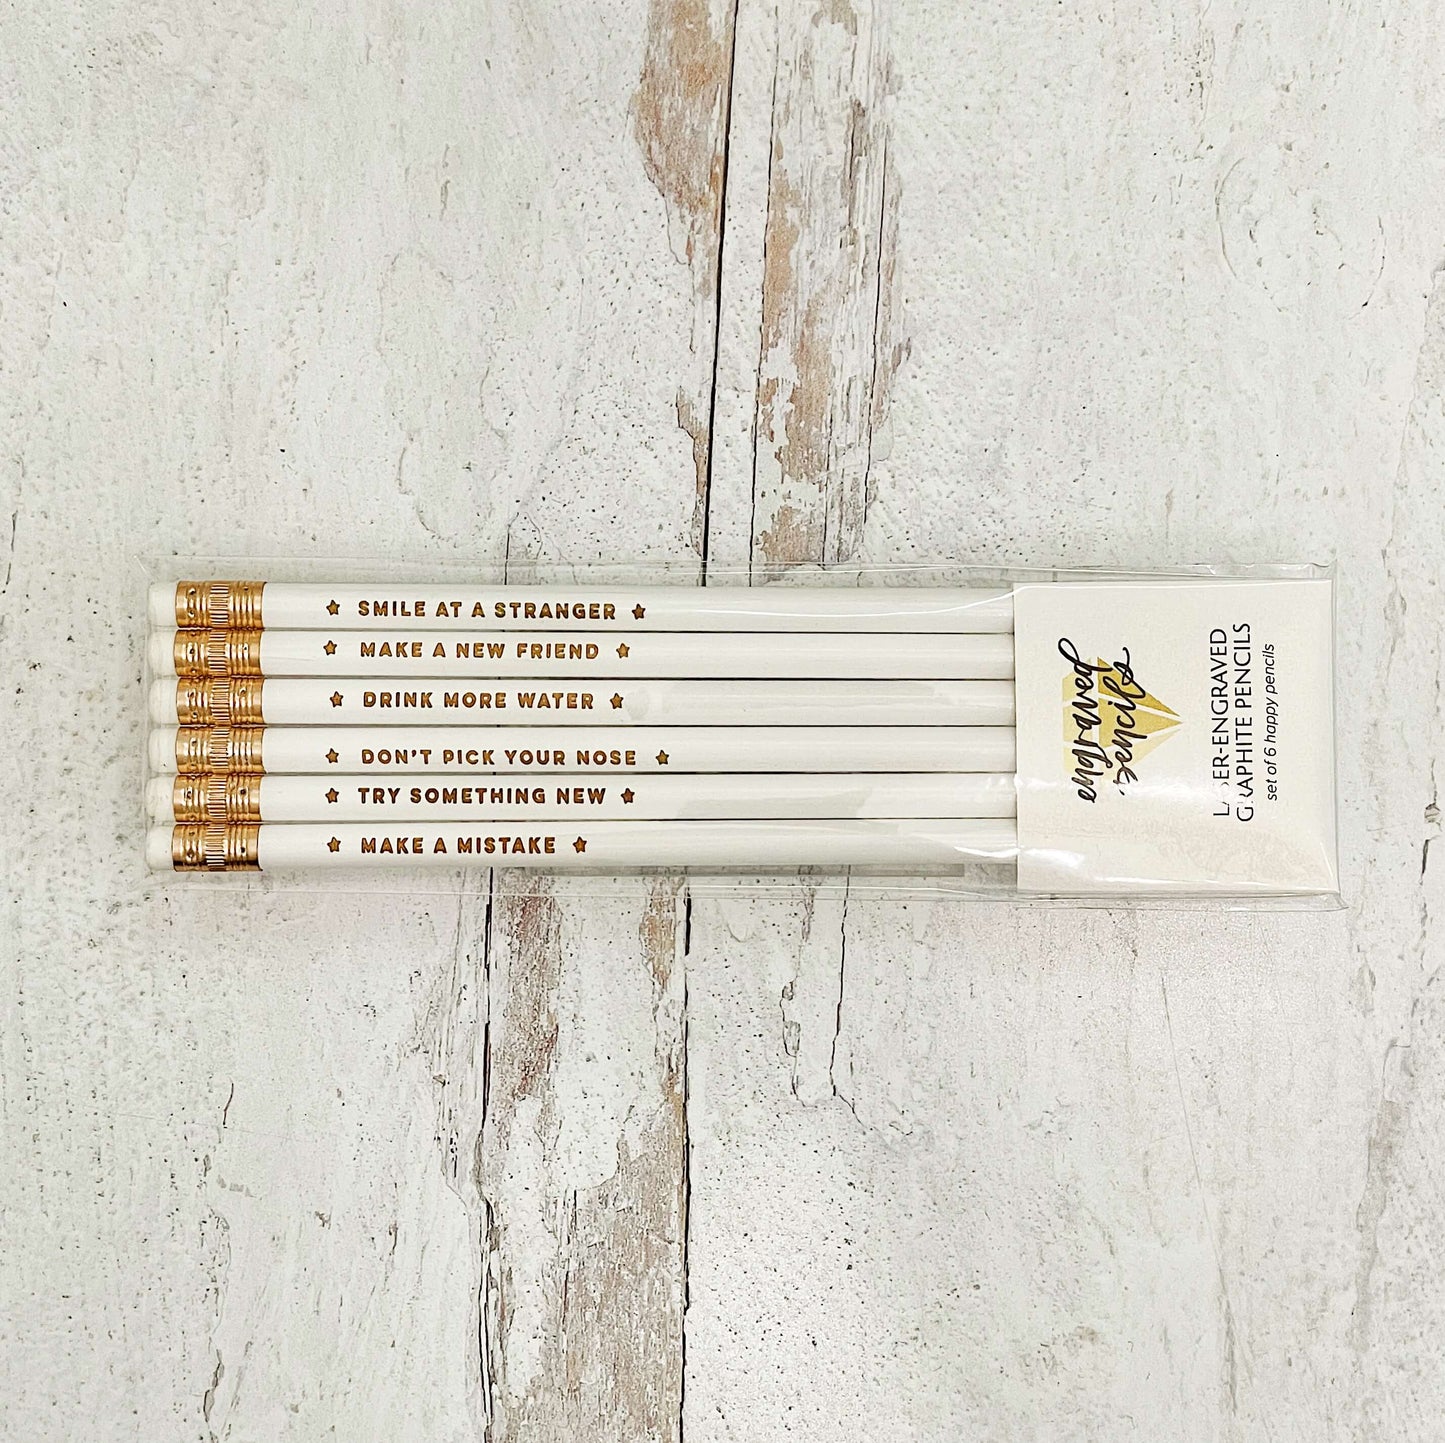 Encouragement Pencil Set